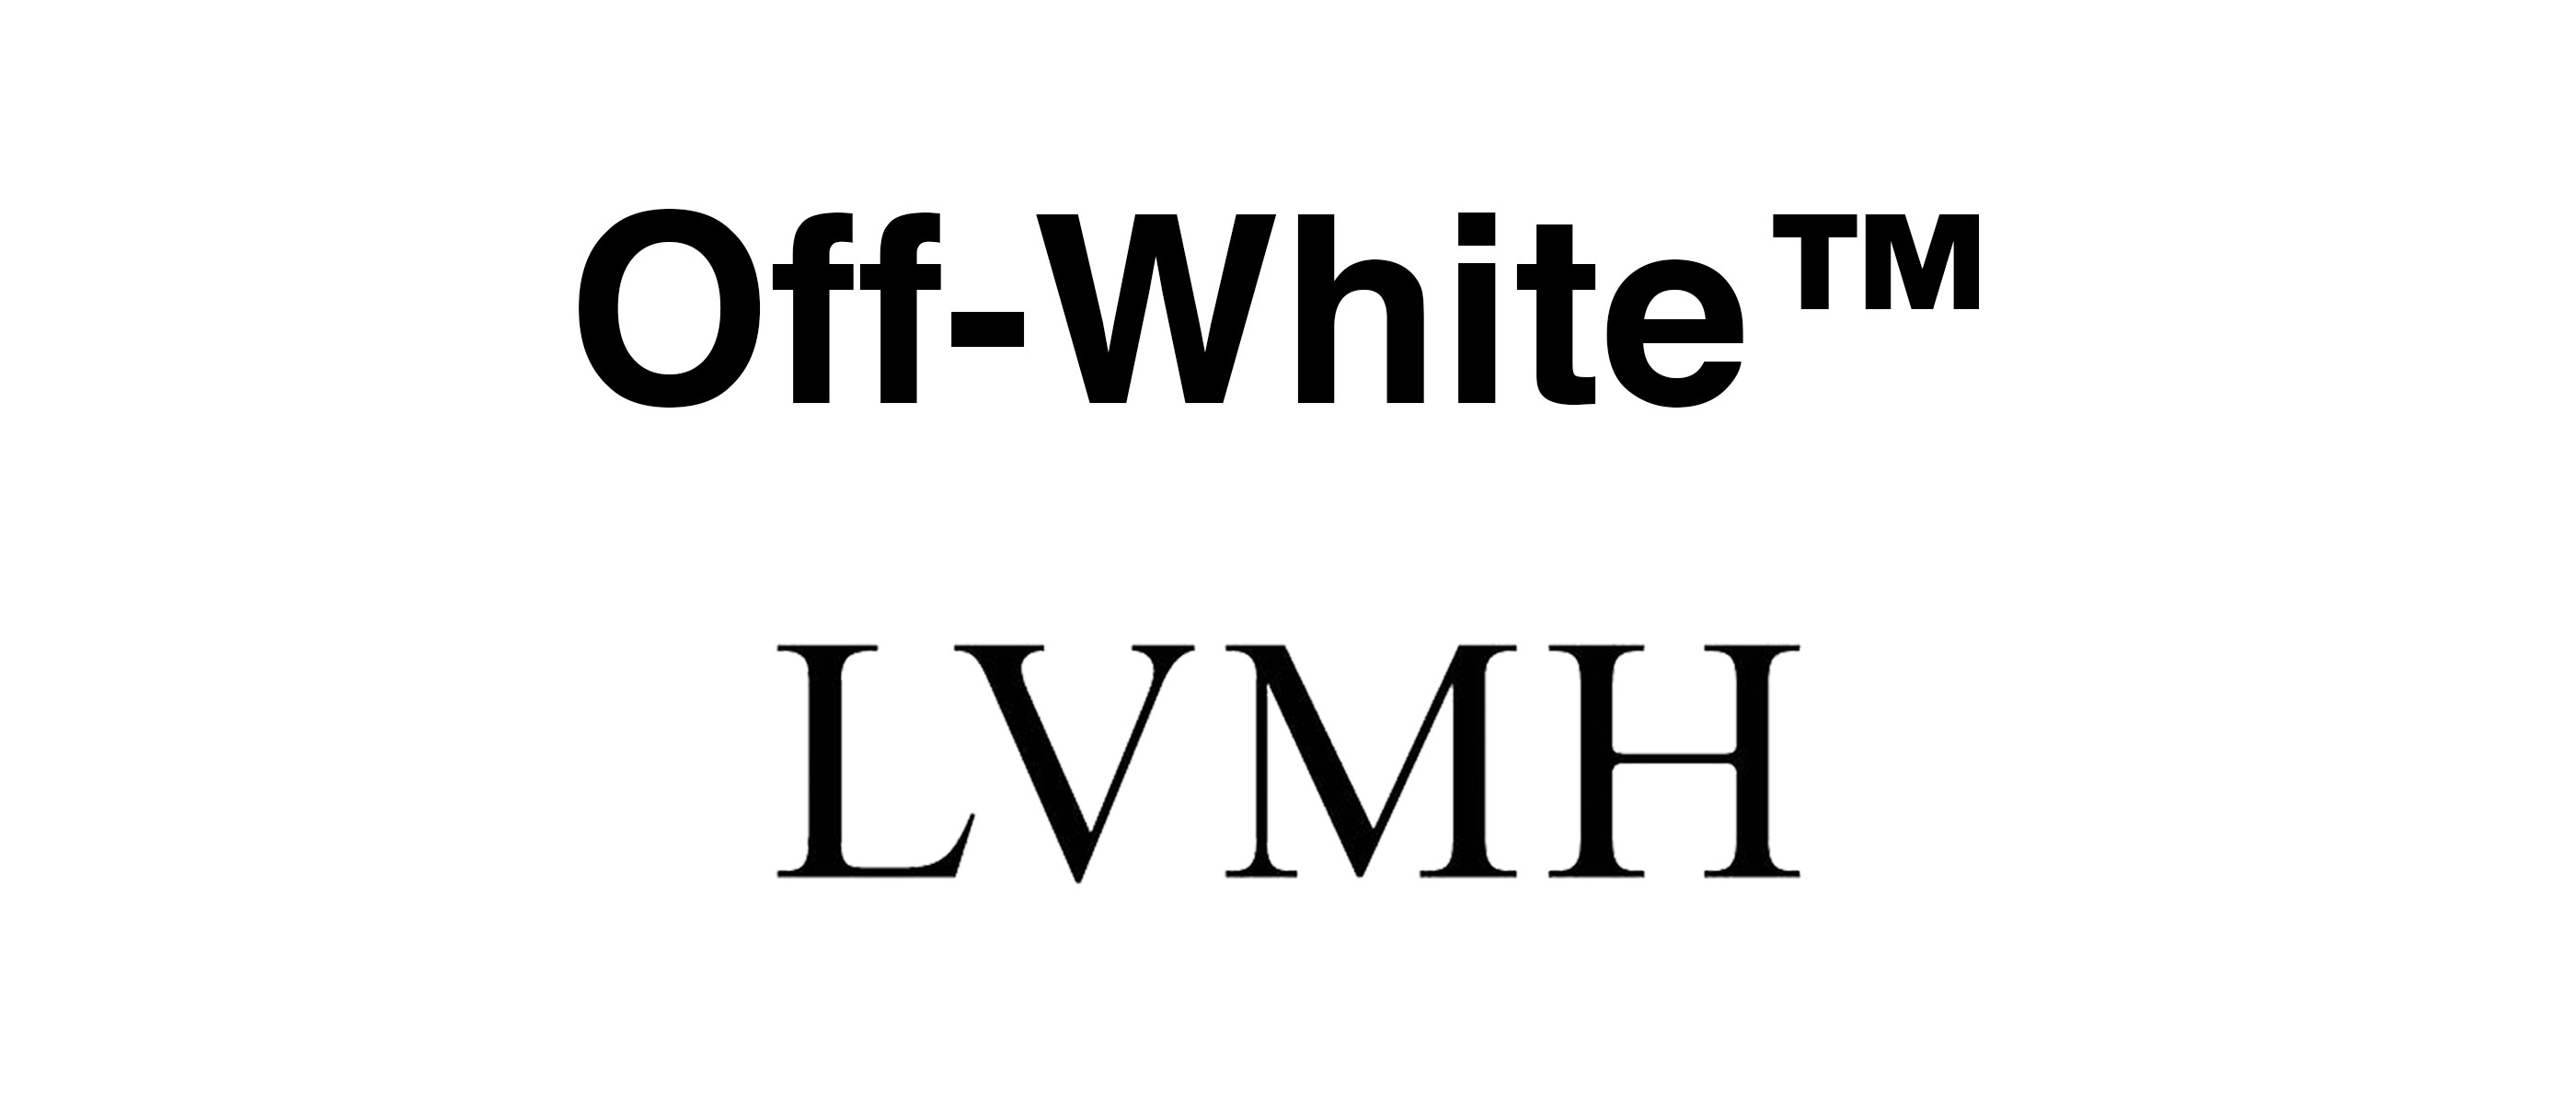 off white lvmh